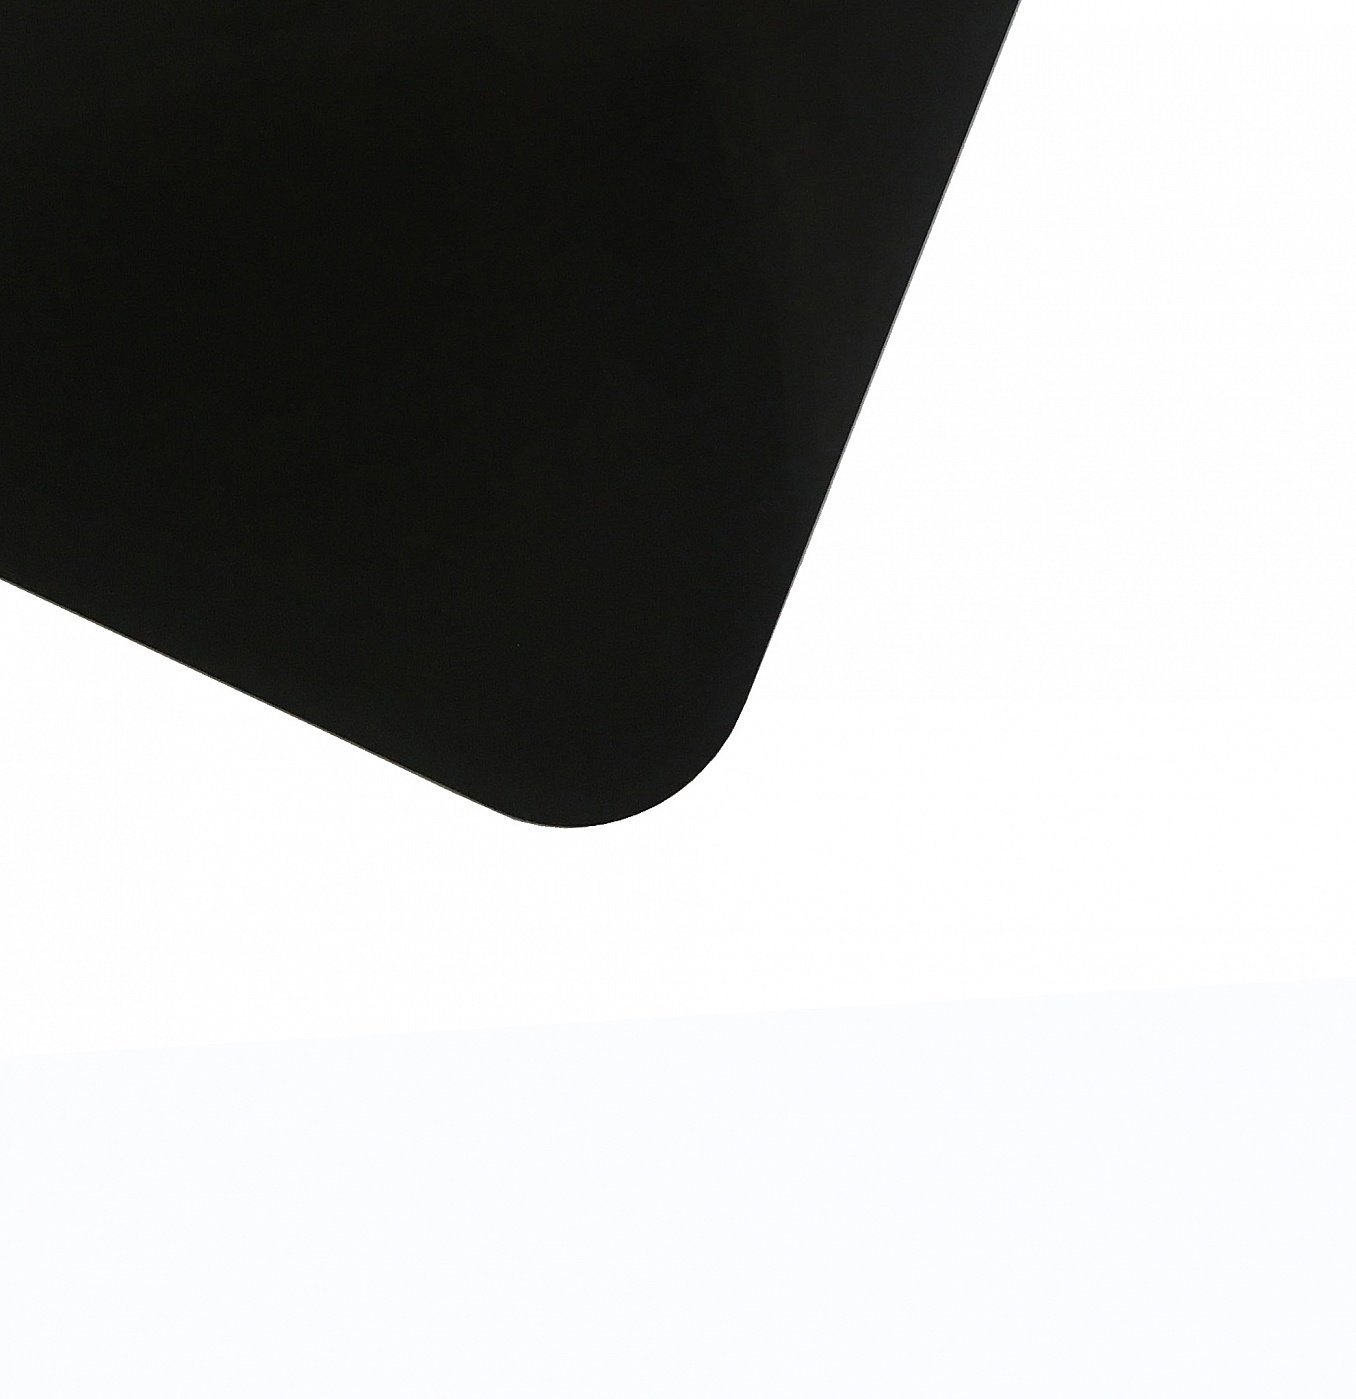 Планшет для пленэра из оргстекла 3 мм, под лист размера А4, цвет черный развивающий набор 3 в1 сова раскраска пазл планшет маркер в пакете